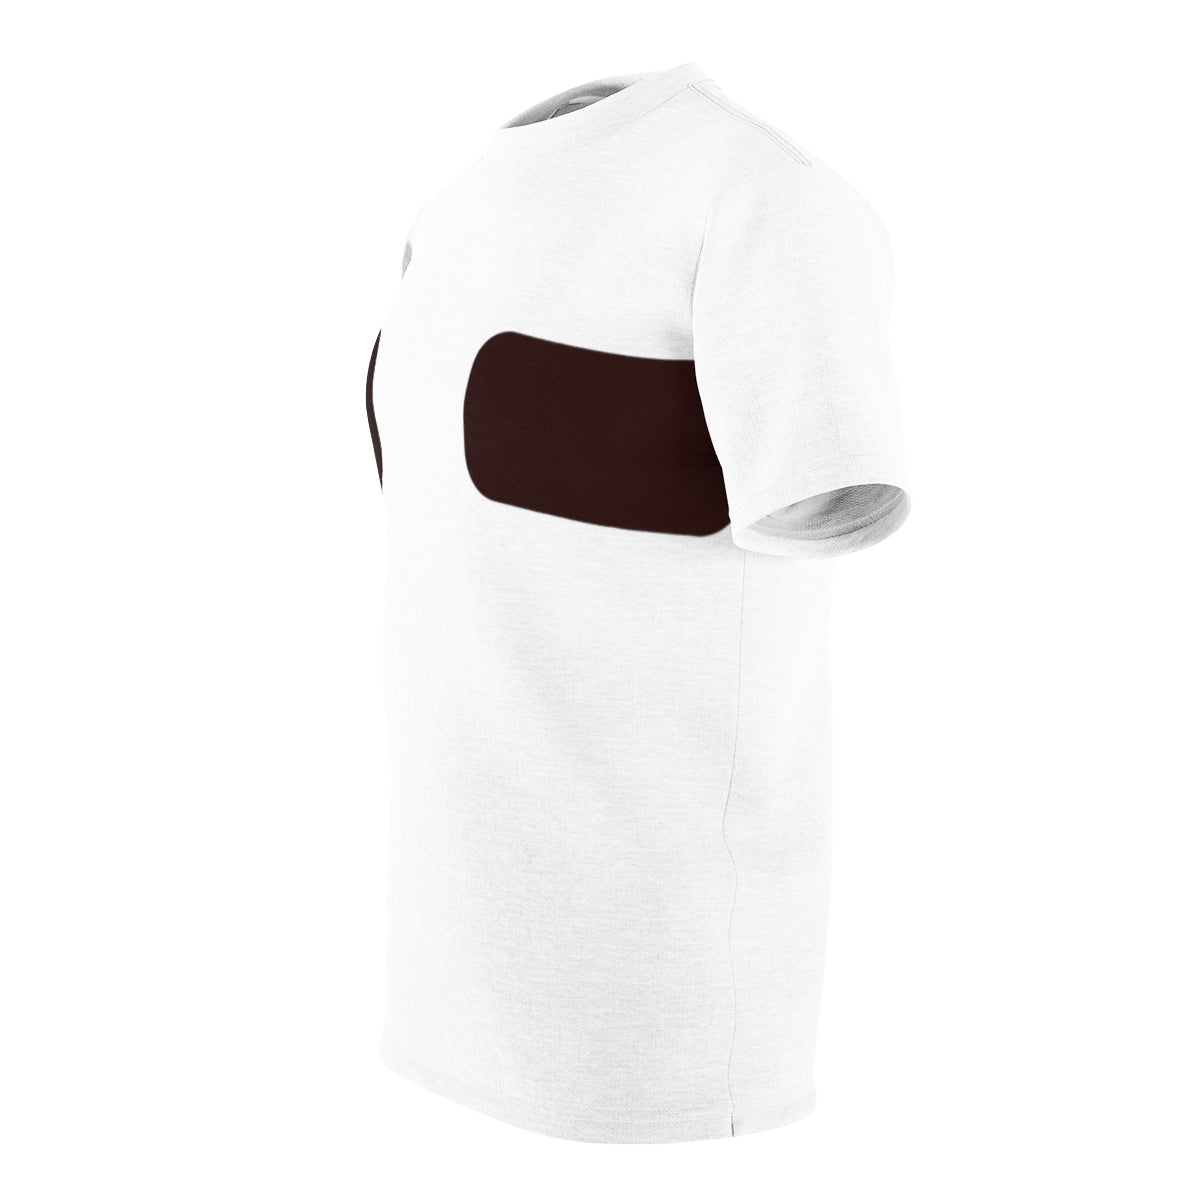 Brust-Taping-T-Shirt normalisieren | Hautton 004 – 1 Streifen 